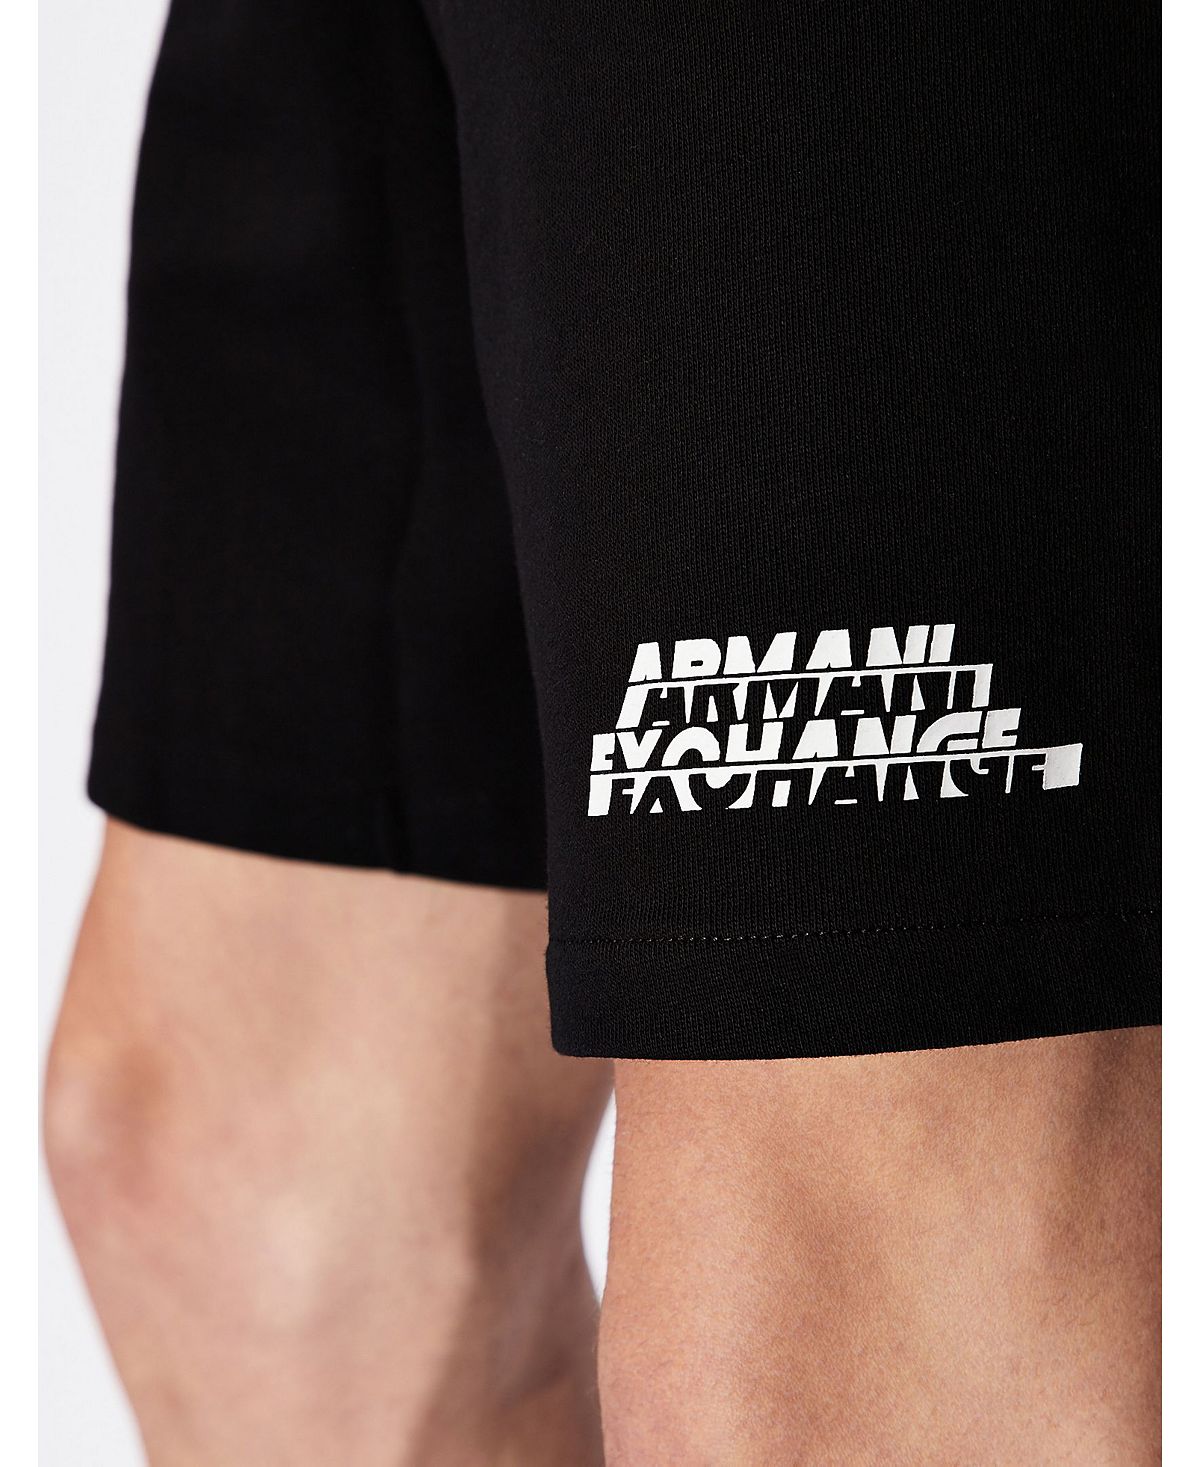 A|x Armani Exchange | Sweatpant Shorts Black